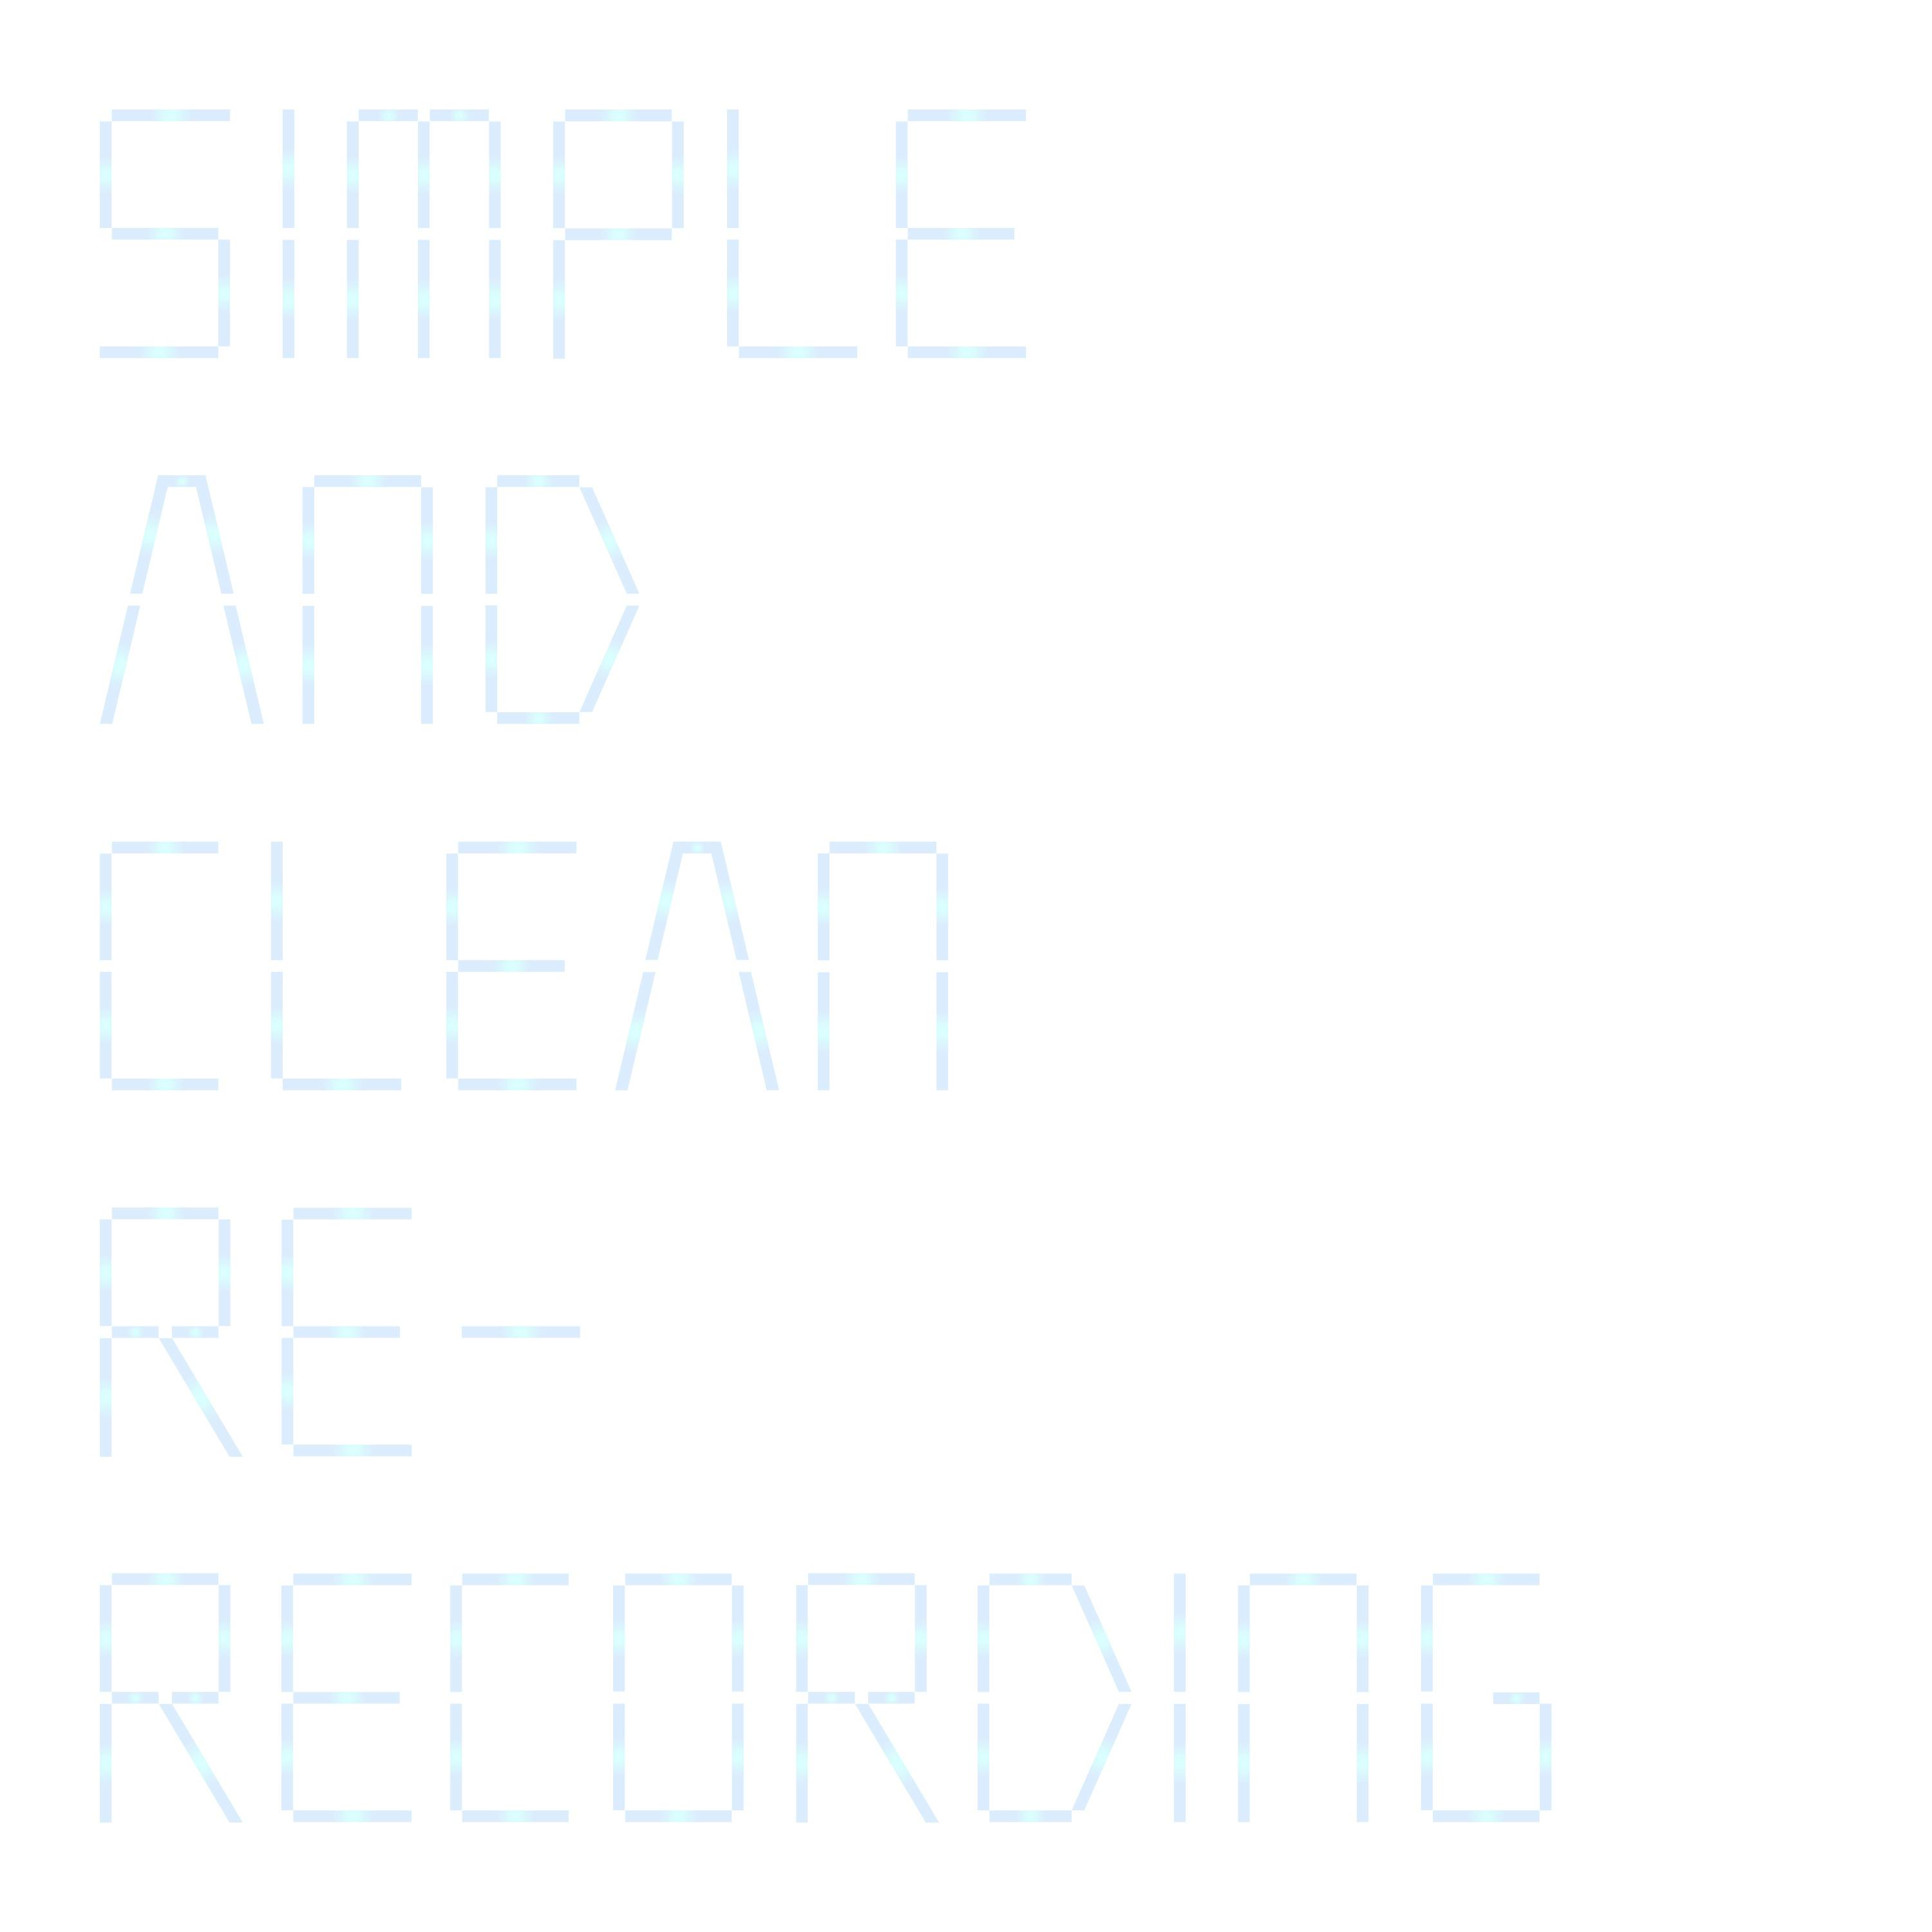 宇多田ヒカル 「Simple And Clean (Re-Recording)」のリリースが決定。 本楽曲が使用された「キングダム ハーツ」シリーズ Steam版 発表トレーラーもYouTubeプレミア公開。のサムネイル